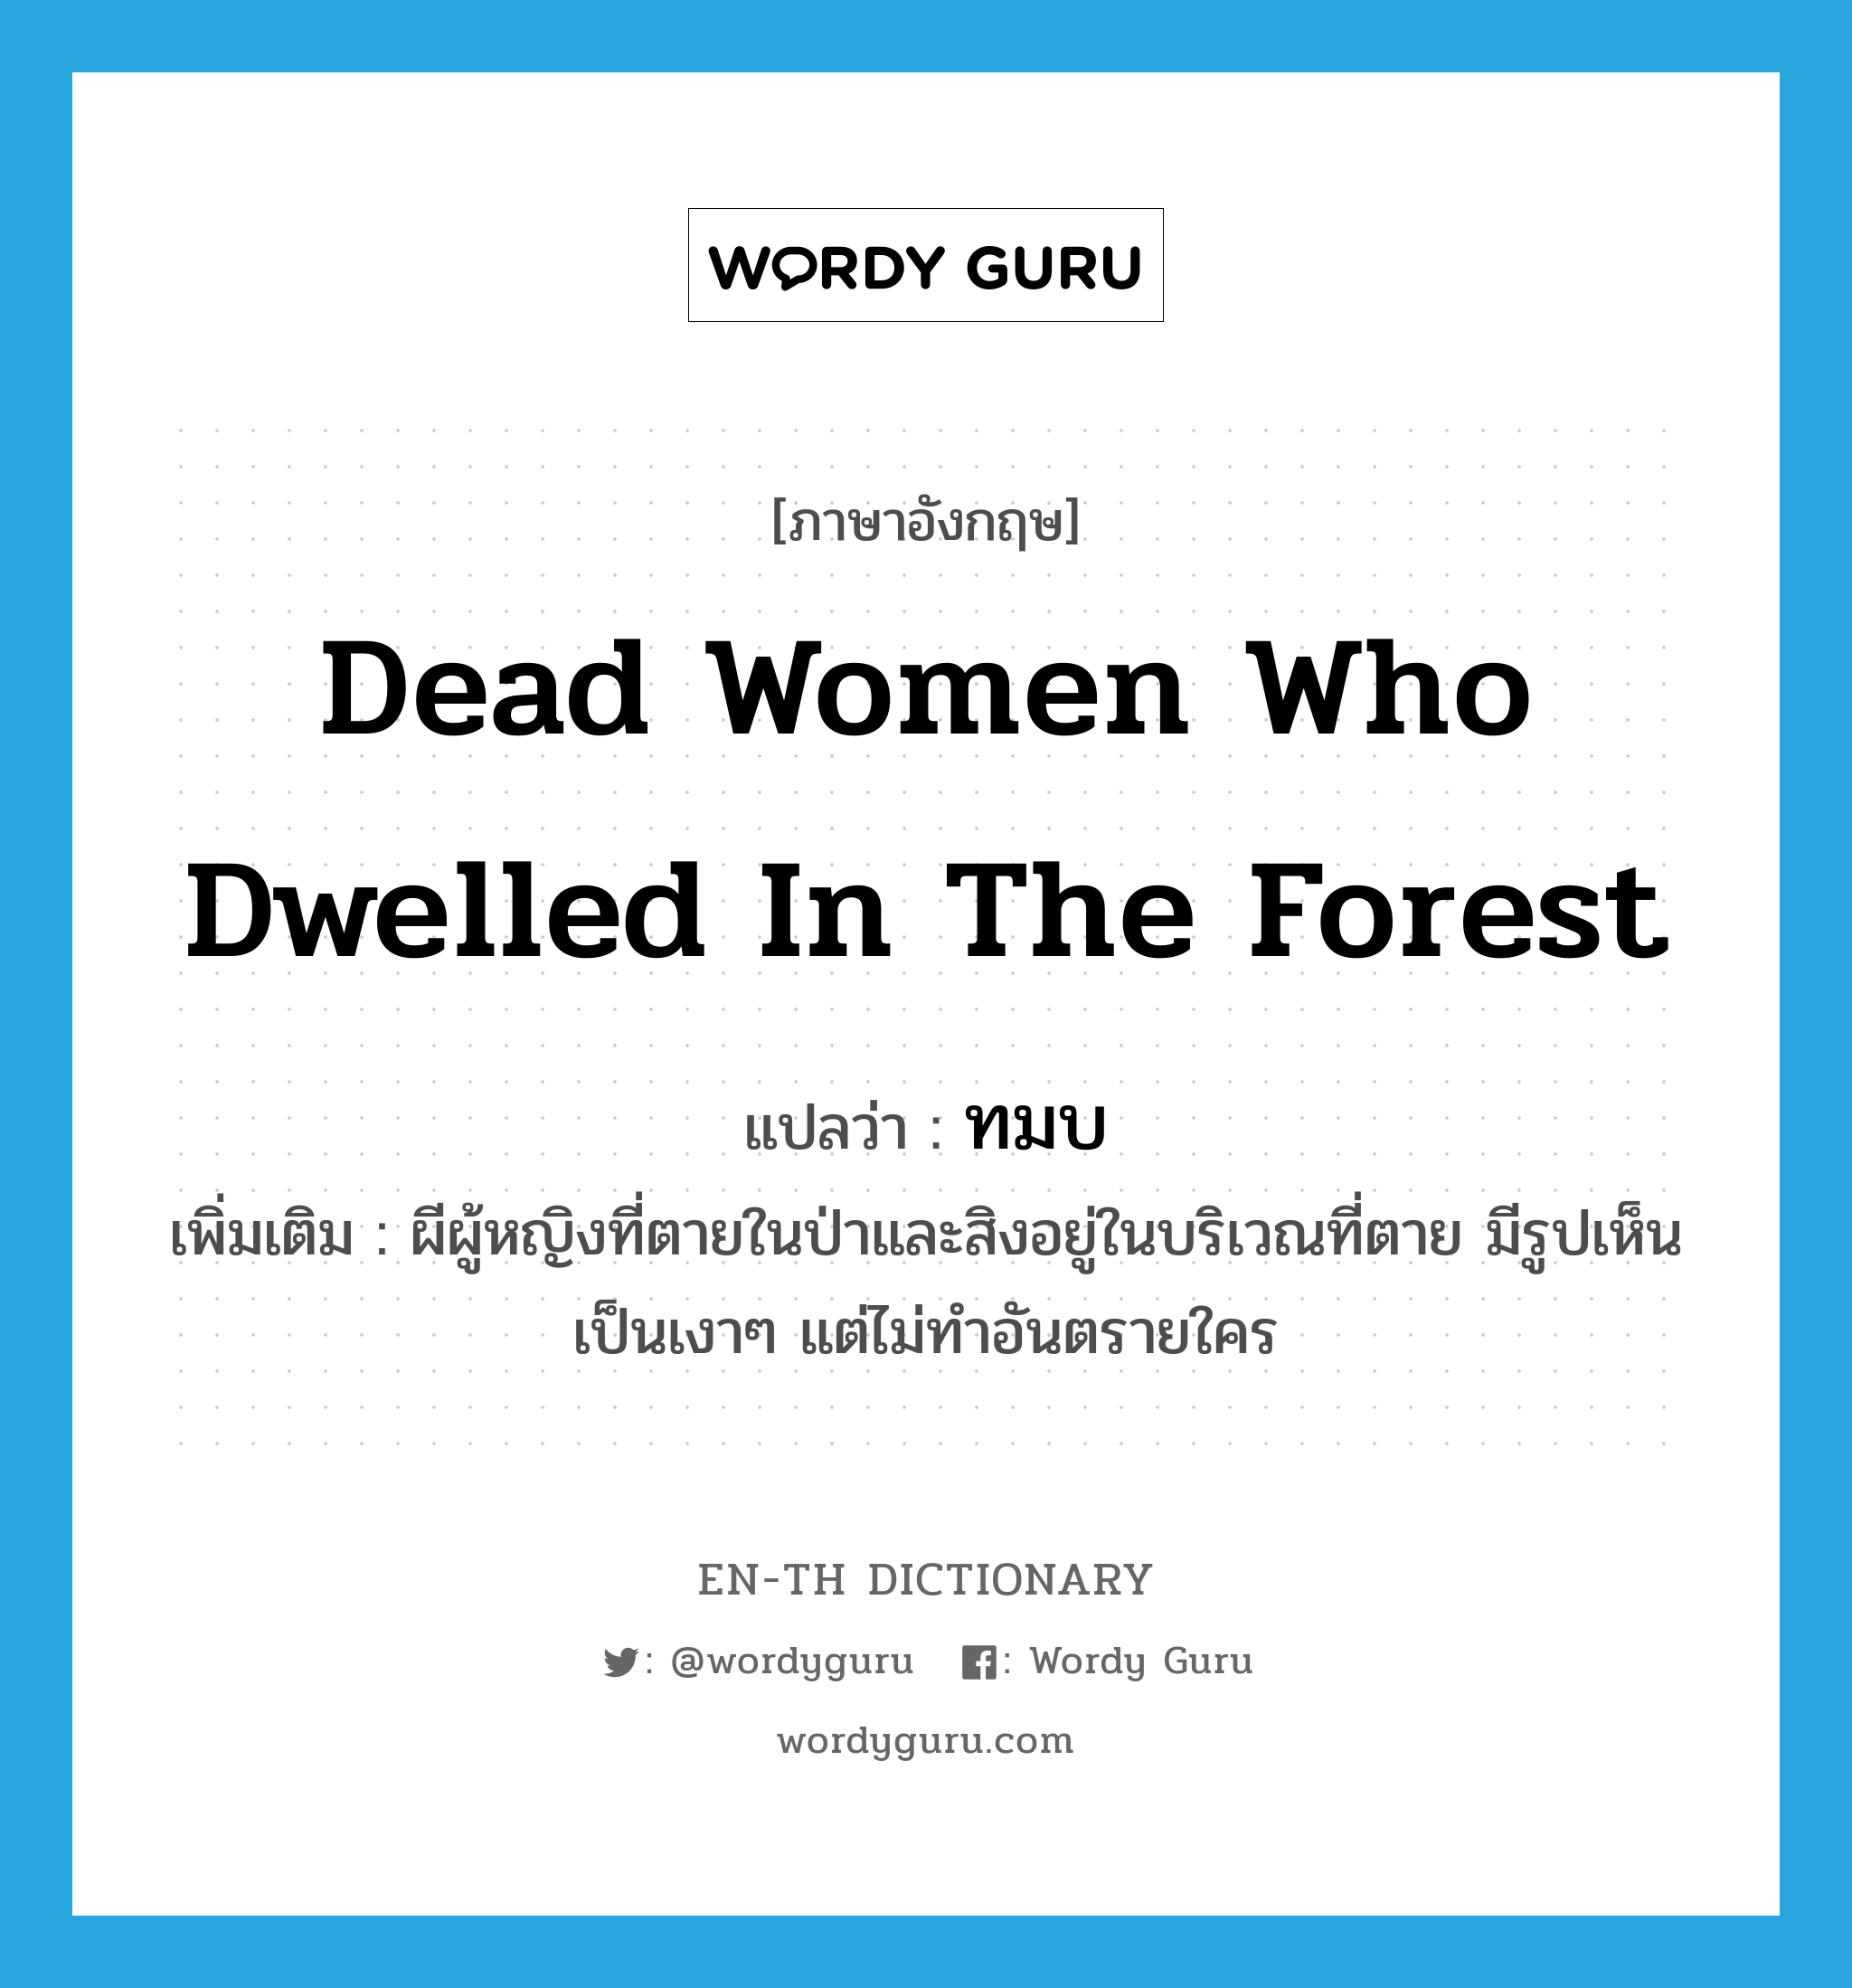 ทมบ ภาษาอังกฤษ?, คำศัพท์ภาษาอังกฤษ ทมบ แปลว่า dead women who dwelled in the forest ประเภท N เพิ่มเติม ผีผู้หญิงที่ตายในป่าและสิงอยู่ในบริเวณที่ตาย มีรูปเห็นเป็นเงาๆ แต่ไม่ทำอันตรายใคร หมวด N